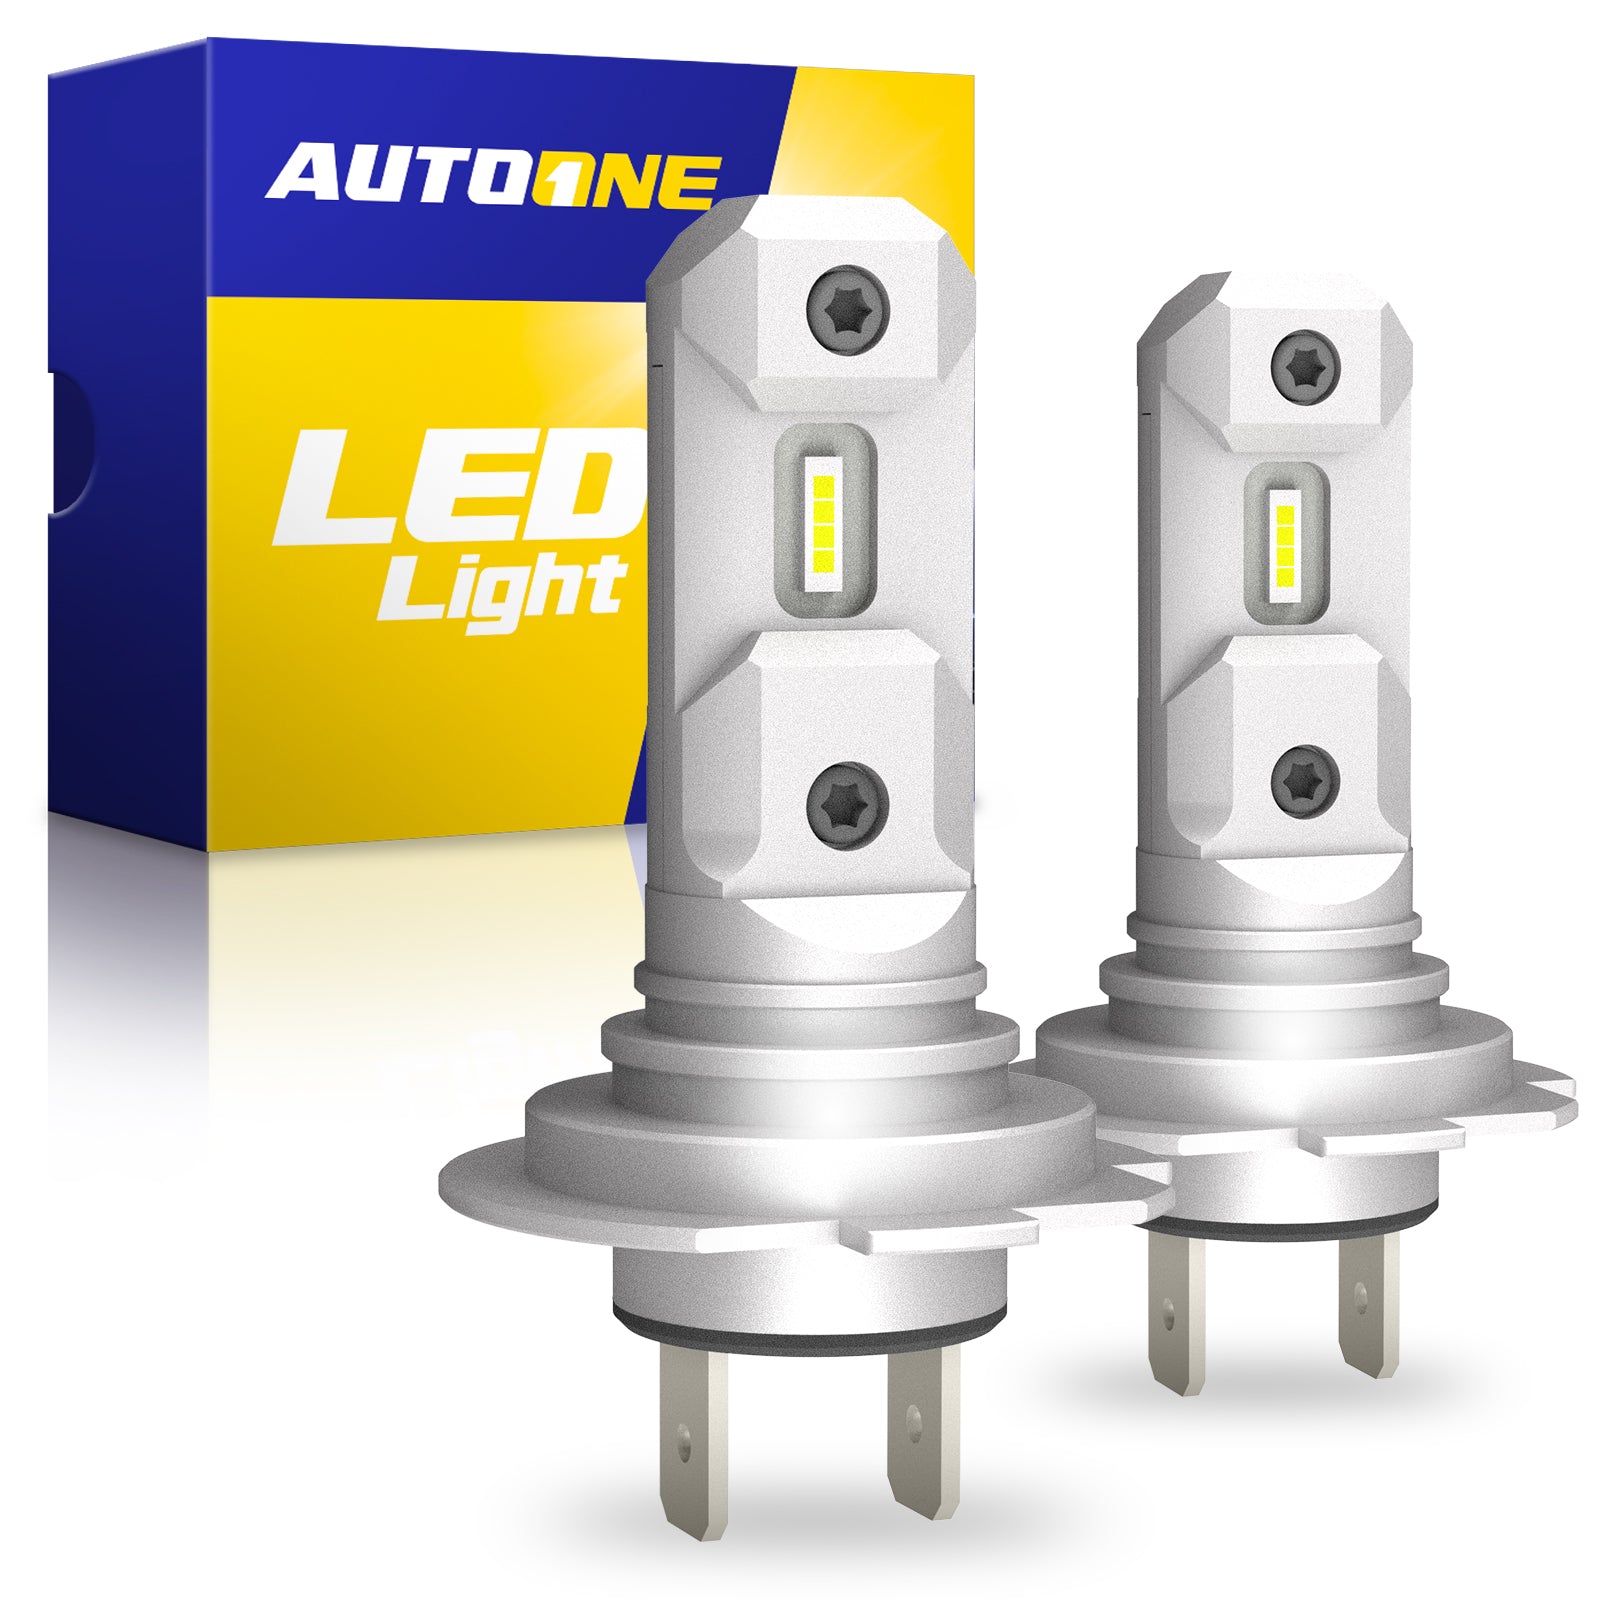 H7 LED Headlights Bulbs  Fog Lights for Cars, Trucks, 6500K